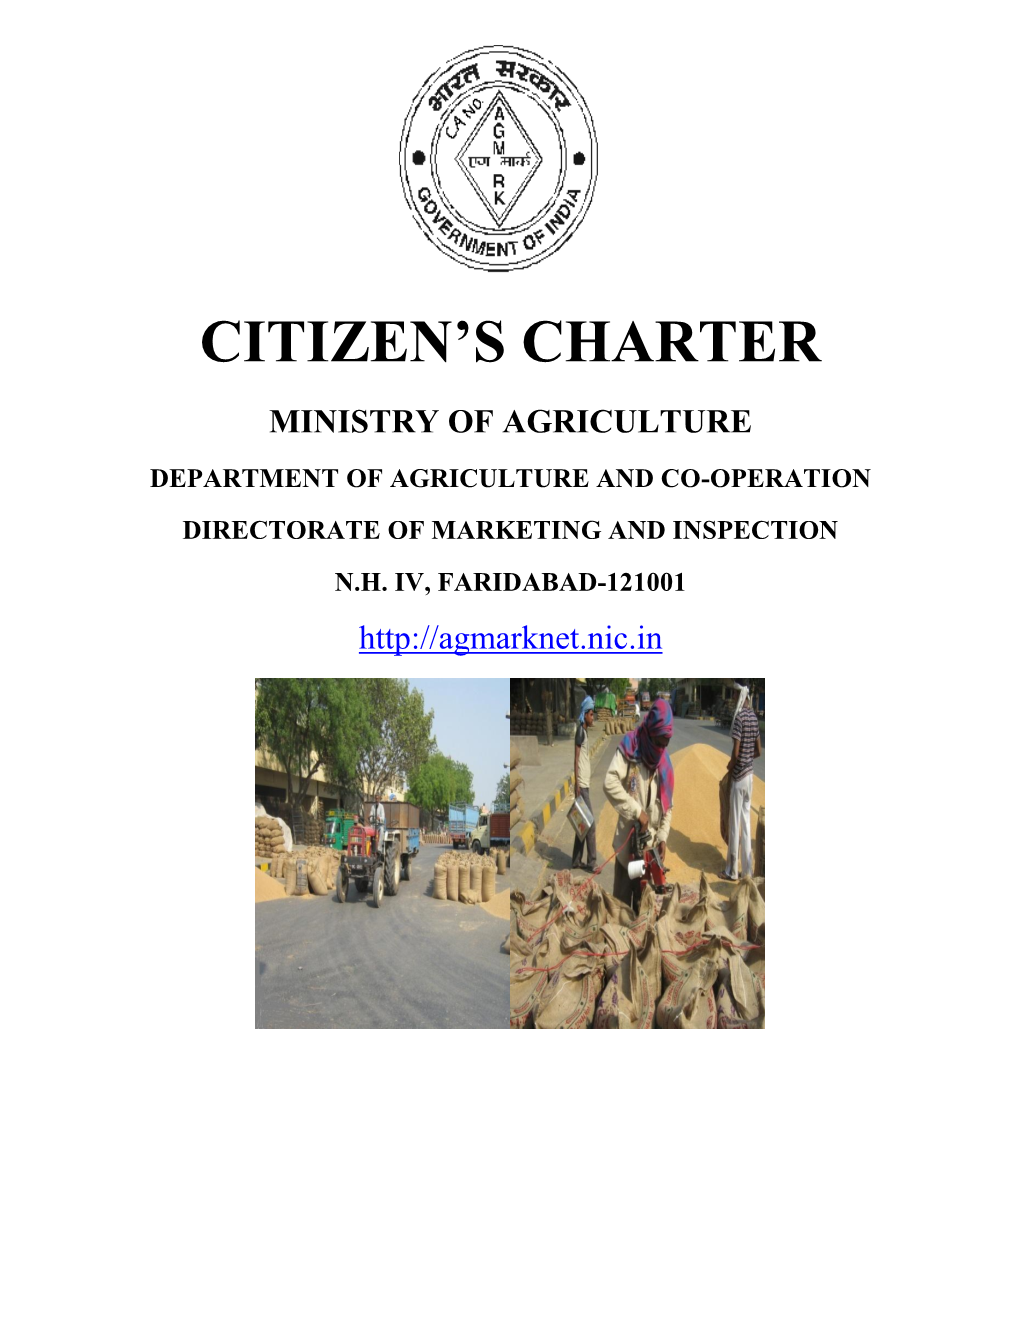 Citizen's Charter